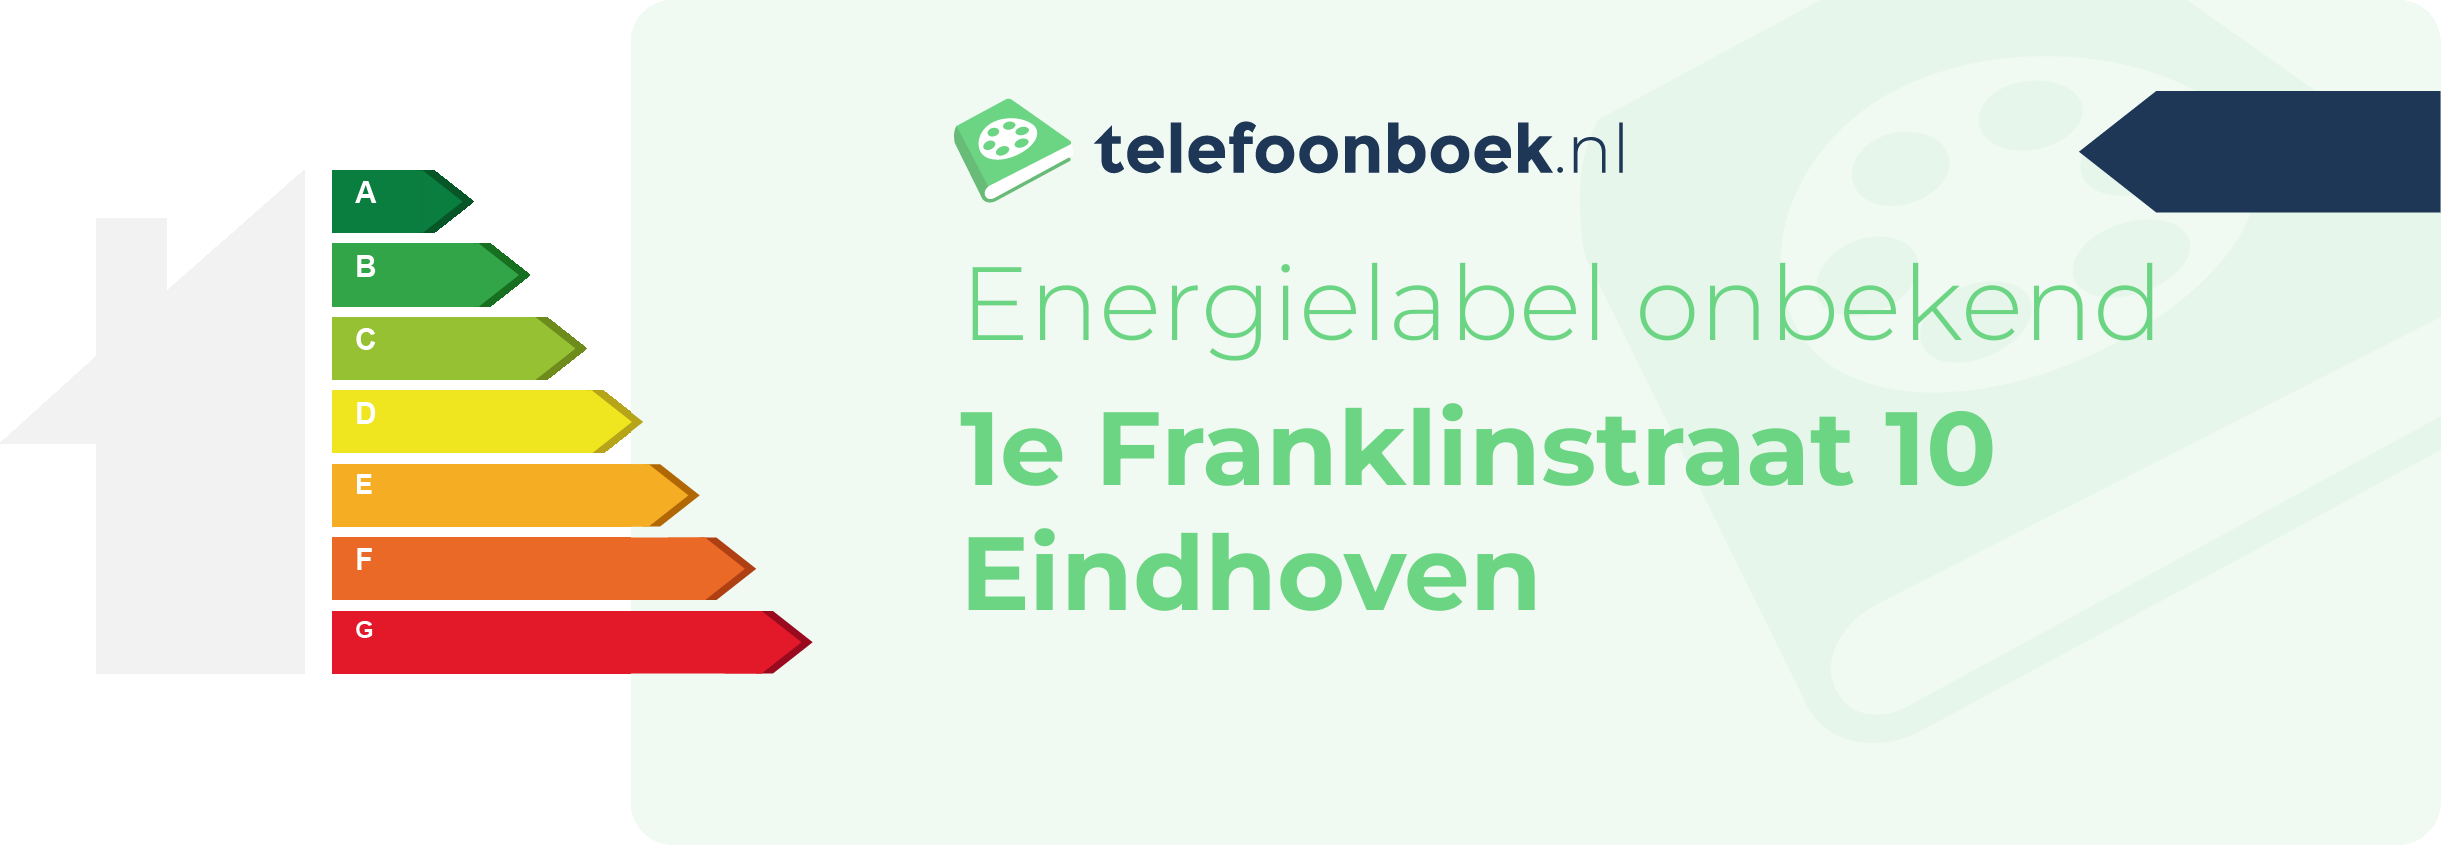 Energielabel 1e Franklinstraat 10 Eindhoven